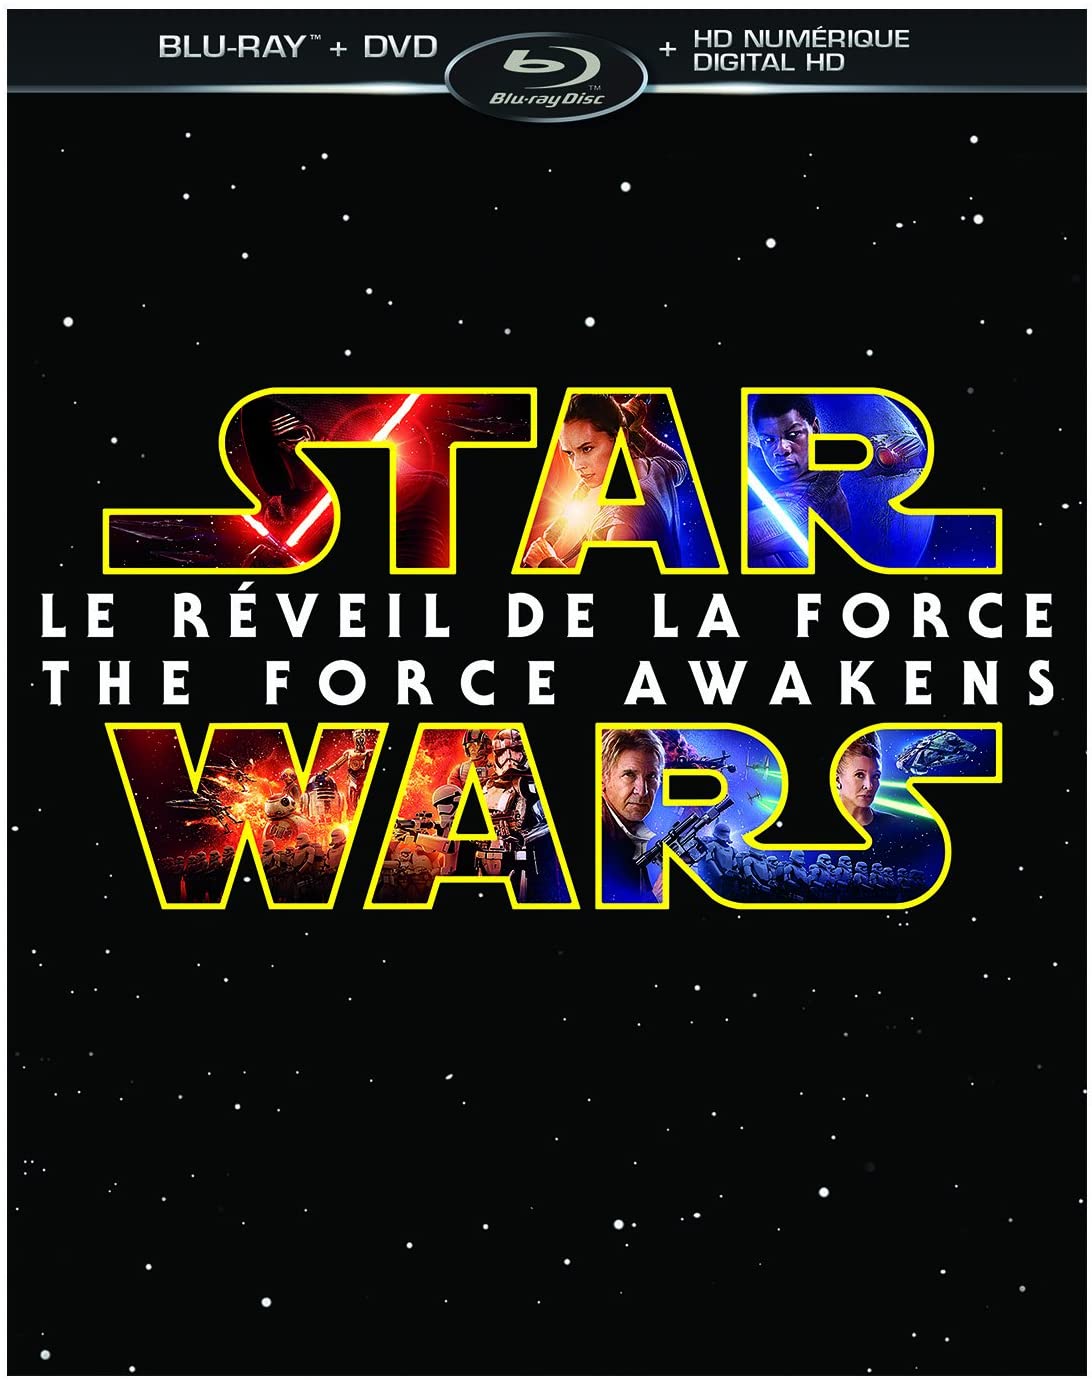 Star Wars: Le Réveil de la Force [Blu-ray + DVD + HD numérique] (Bilingual) [Blu-ray]